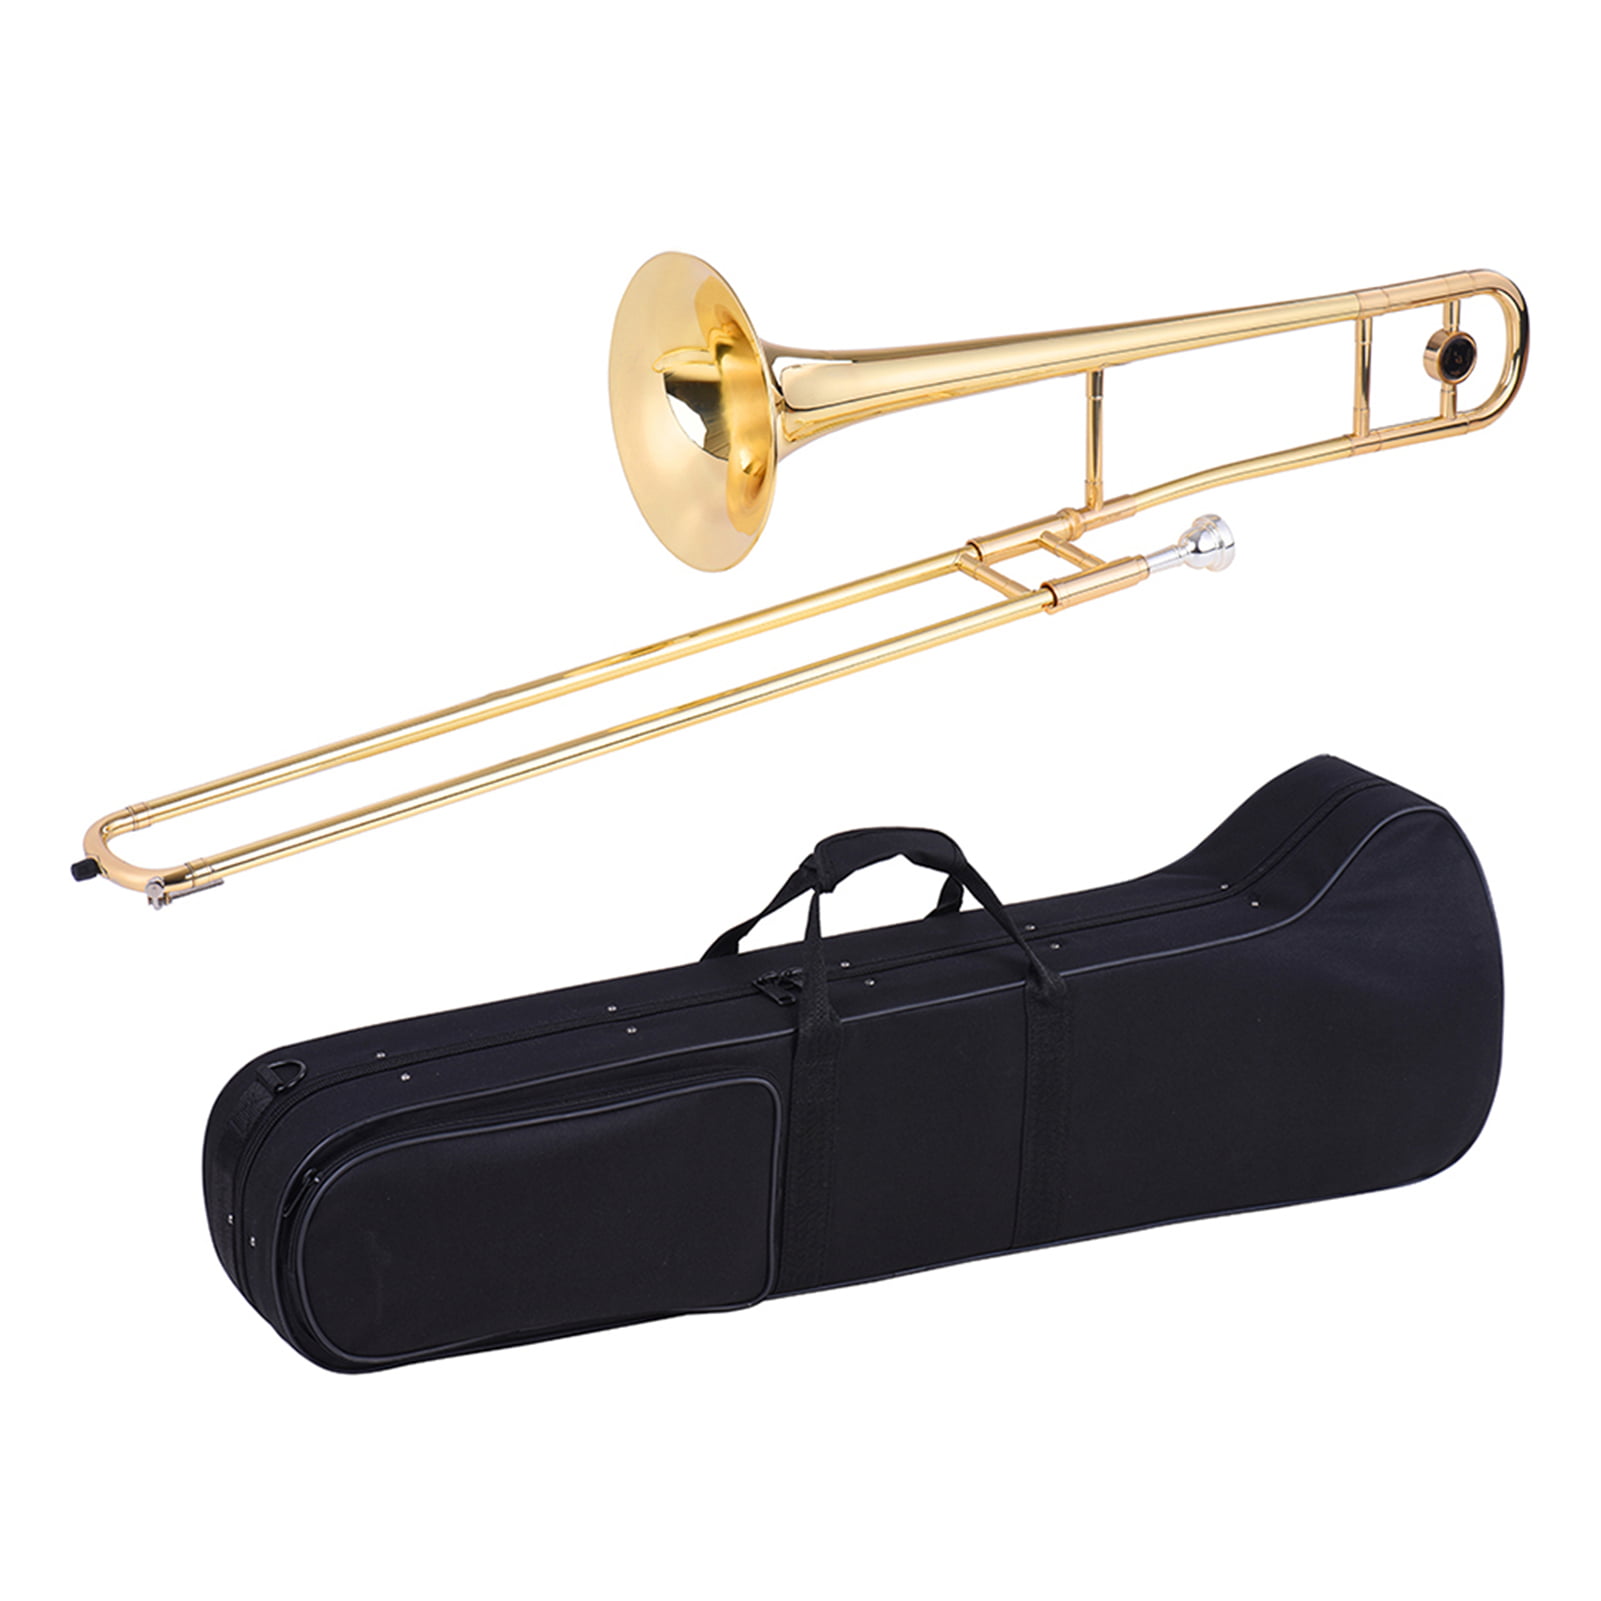 brass instrument list